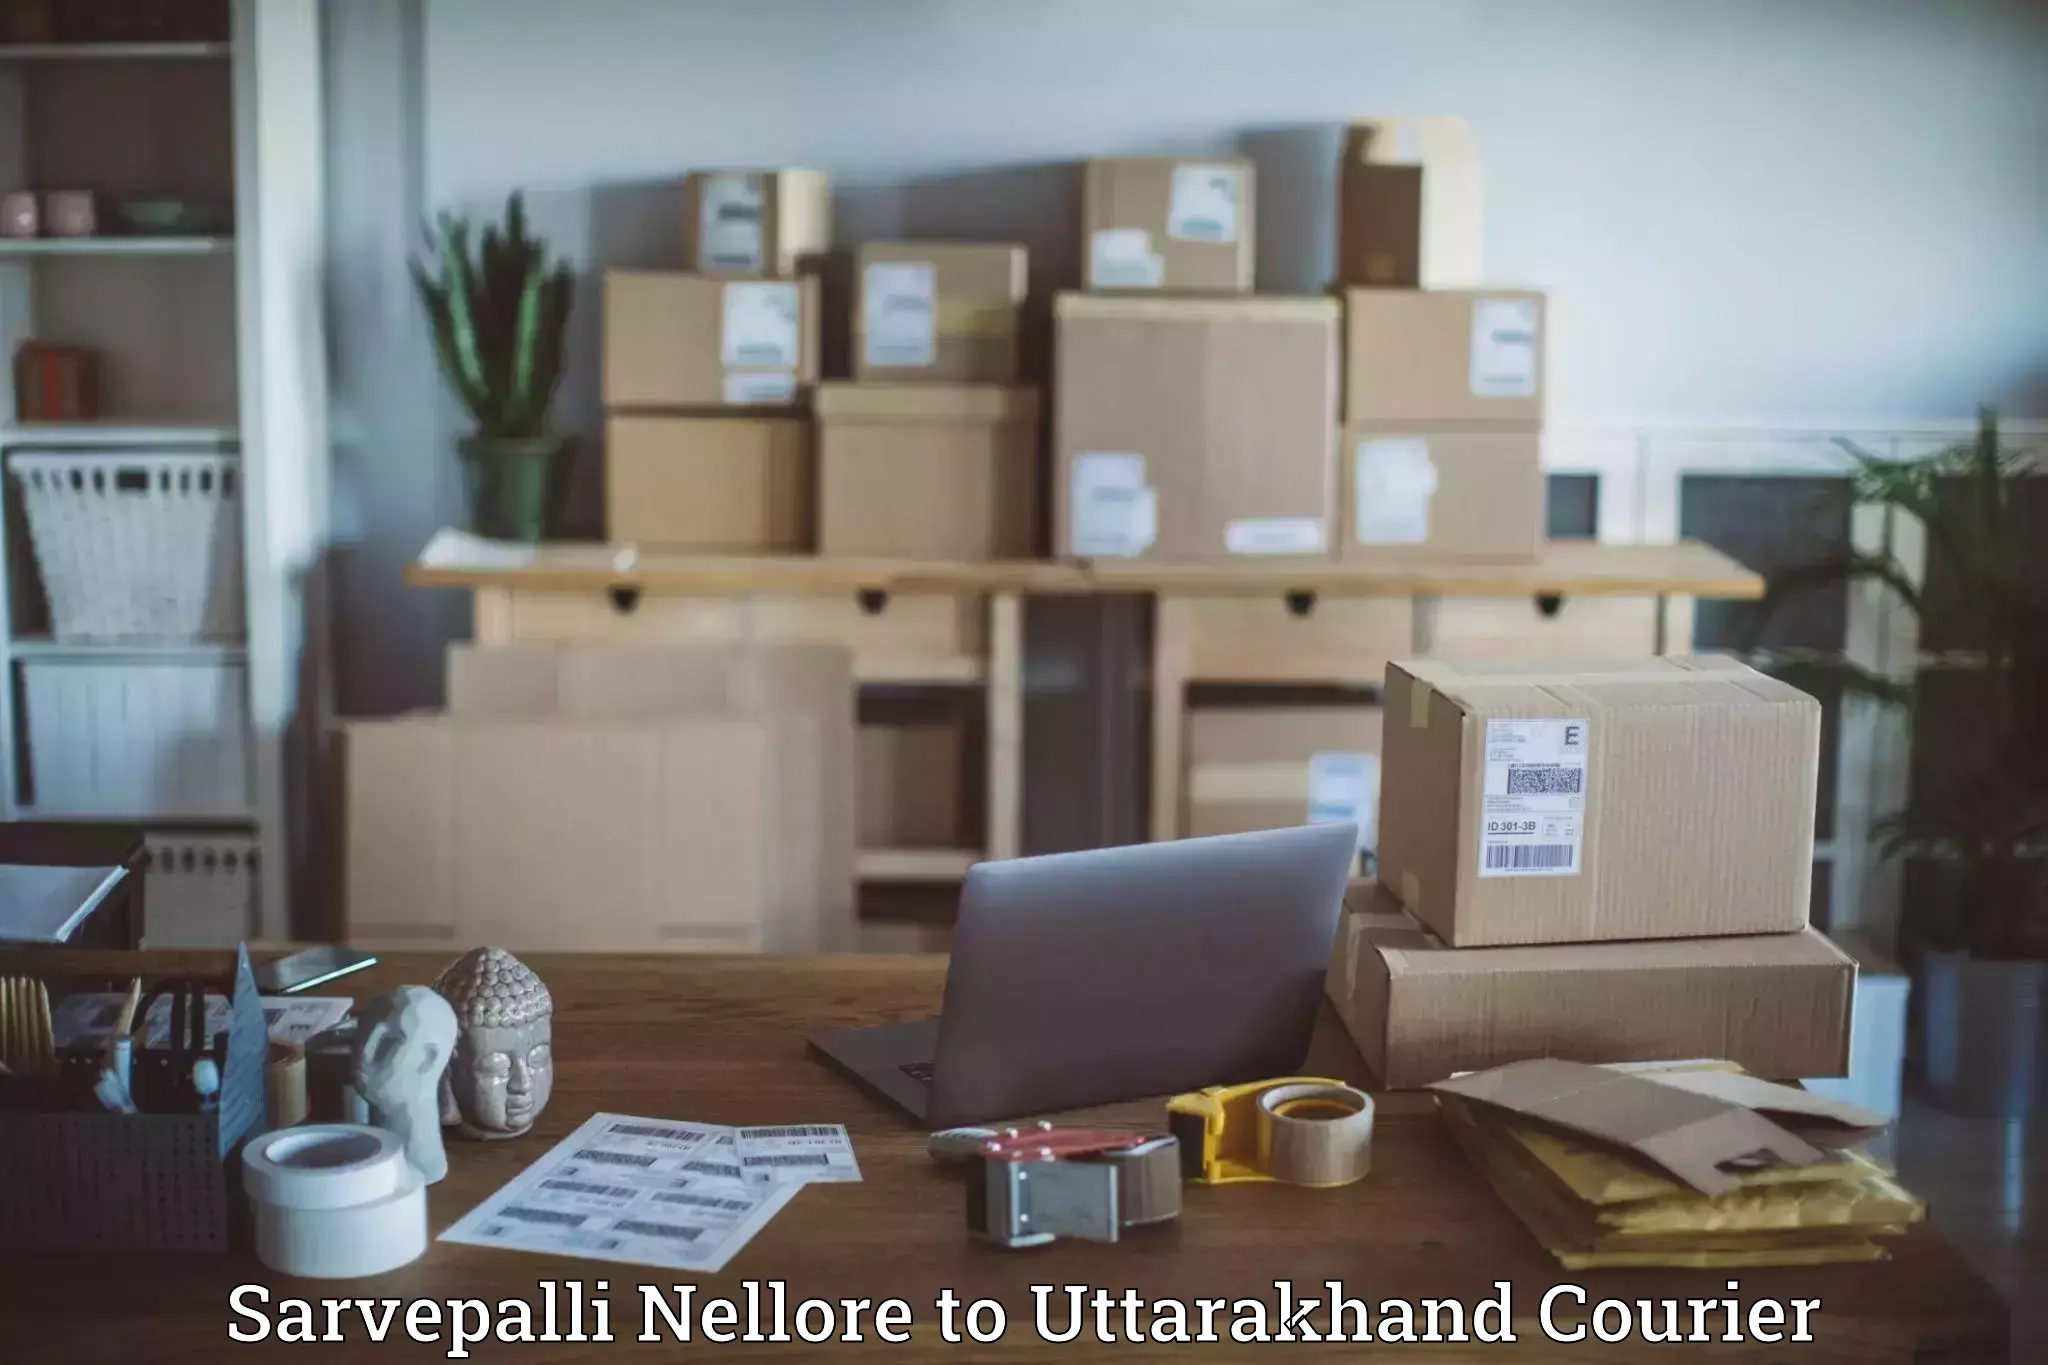 Nationwide parcel services Sarvepalli Nellore to Almora